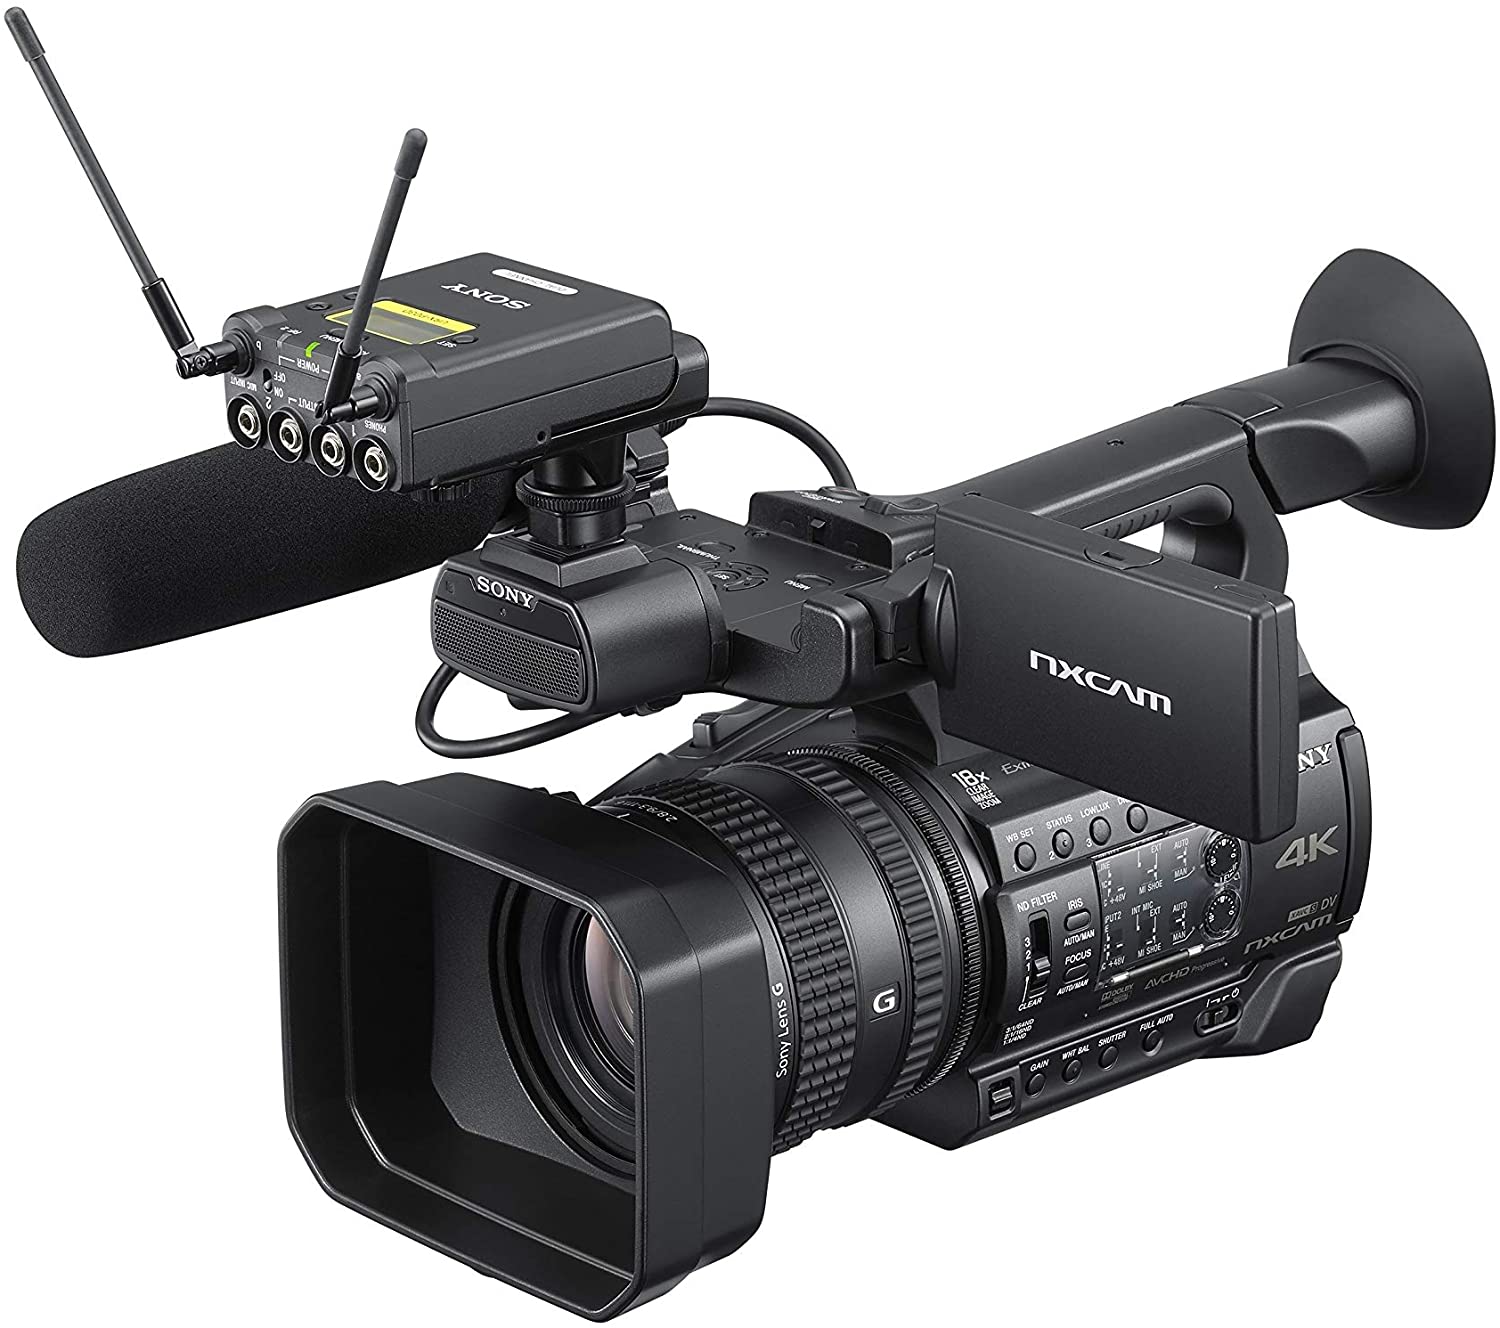 Sony HXR-NX200: Khám phá thế giới của nhiếp ảnh chuyên nghiệp với chiếc máy quay video Sony HXR-NX200 tiên tiến. Chất lượng hình ảnh tuyệt đẹp và sự ổn định tuyệt vời đã làm nên thương hiệu của Sony. Hãy xem ngay và trải nghiệm những điều tuyệt vời.